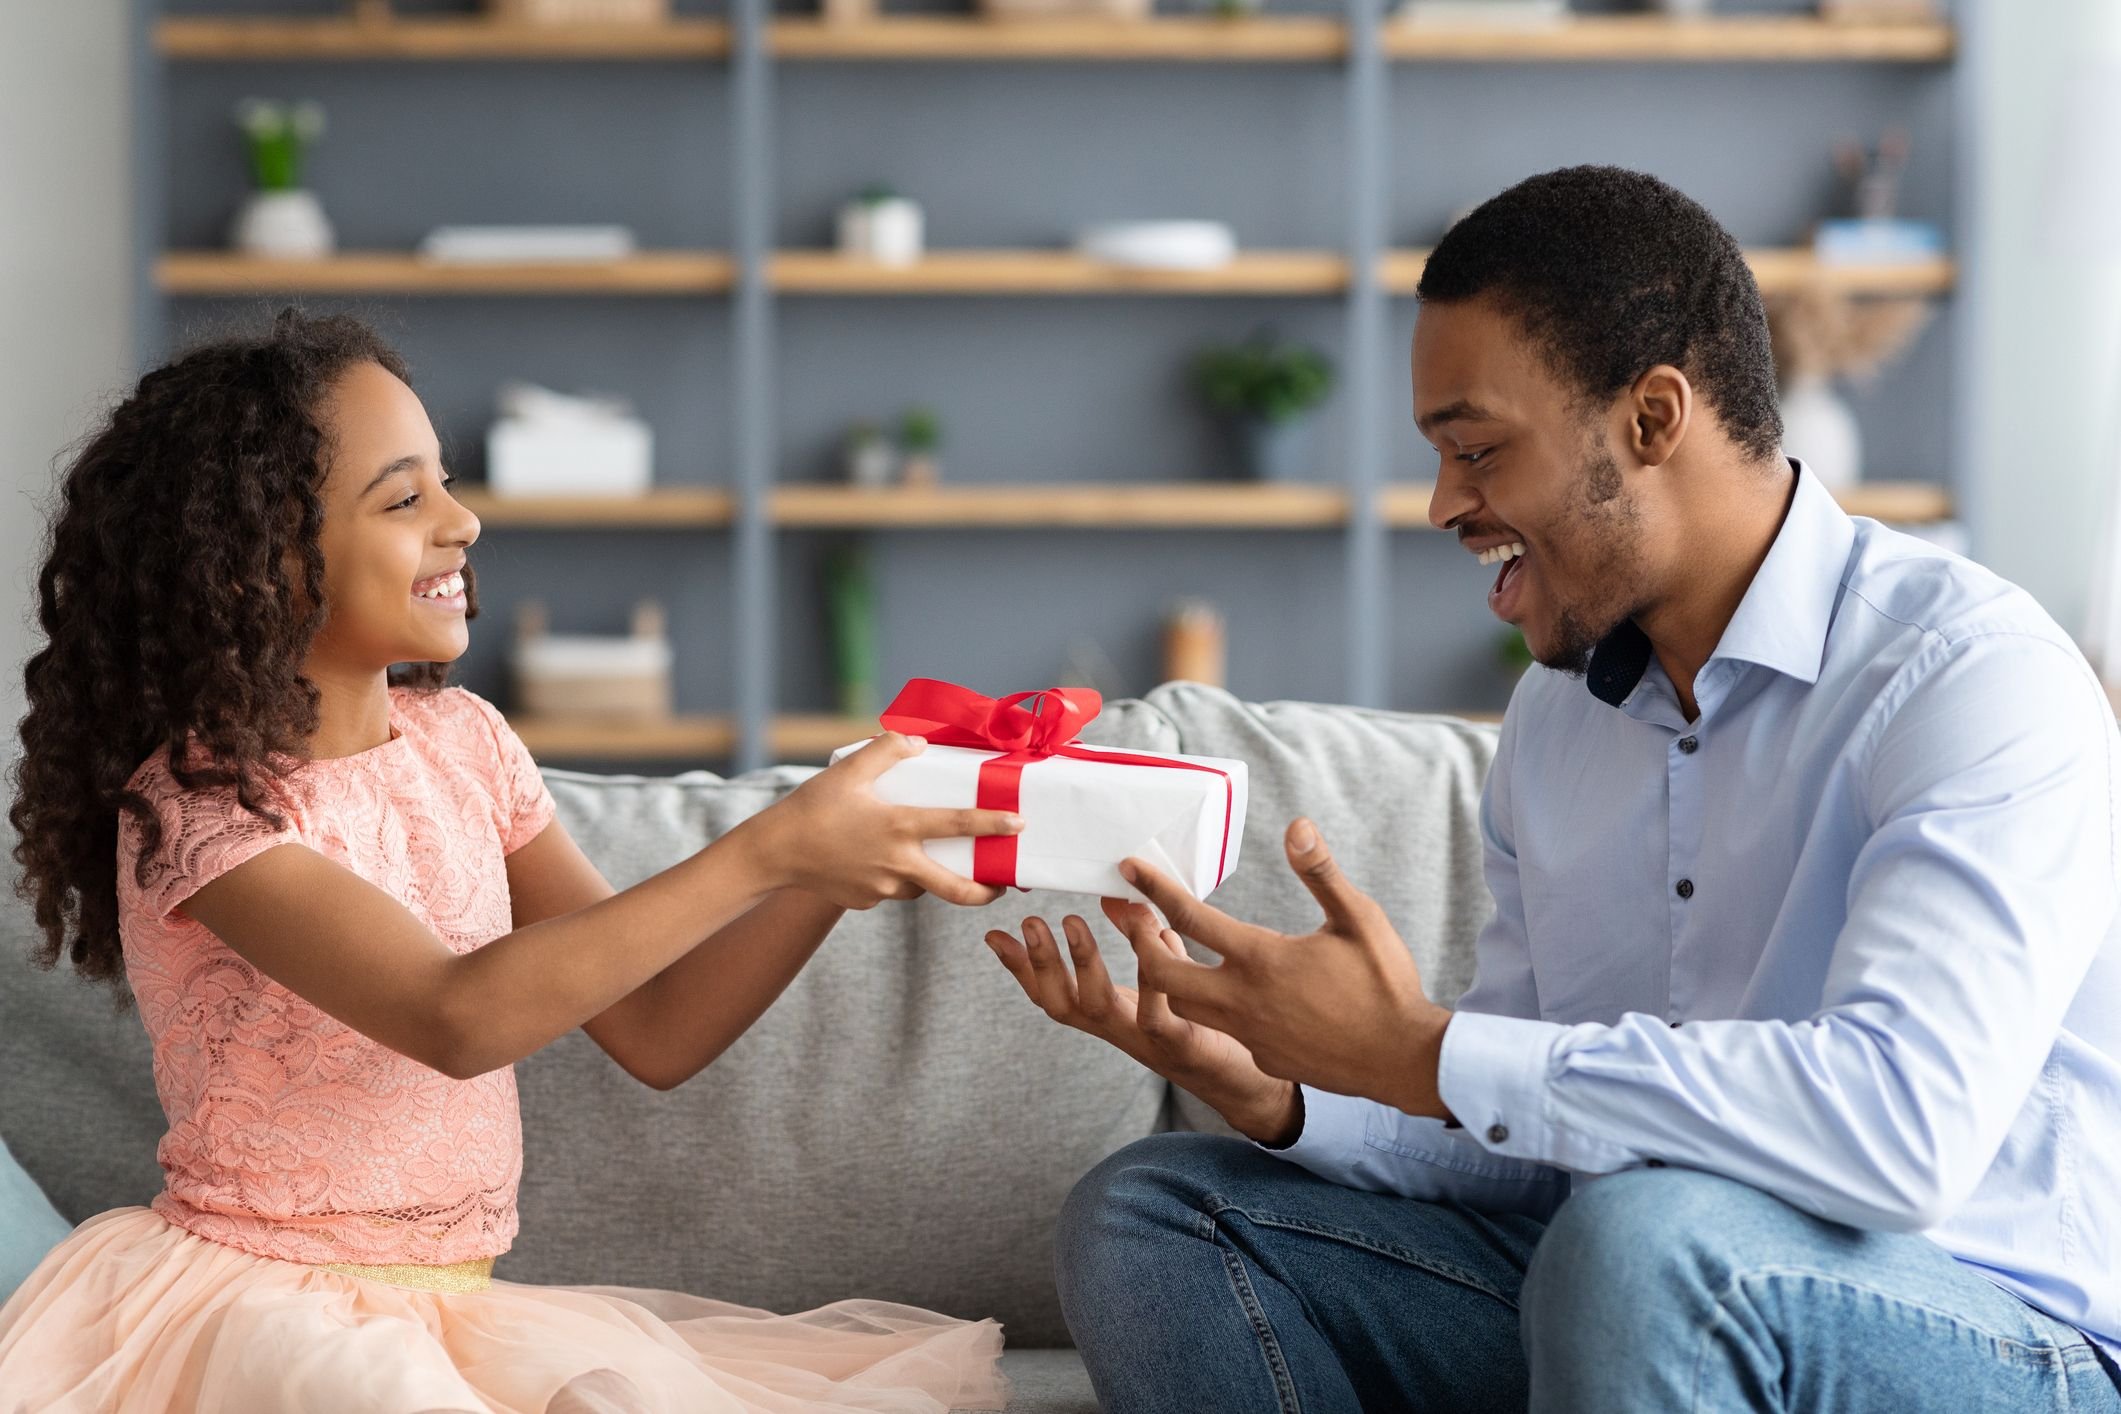 Gift Card: uma forma inteligente de presentear quem você ama!